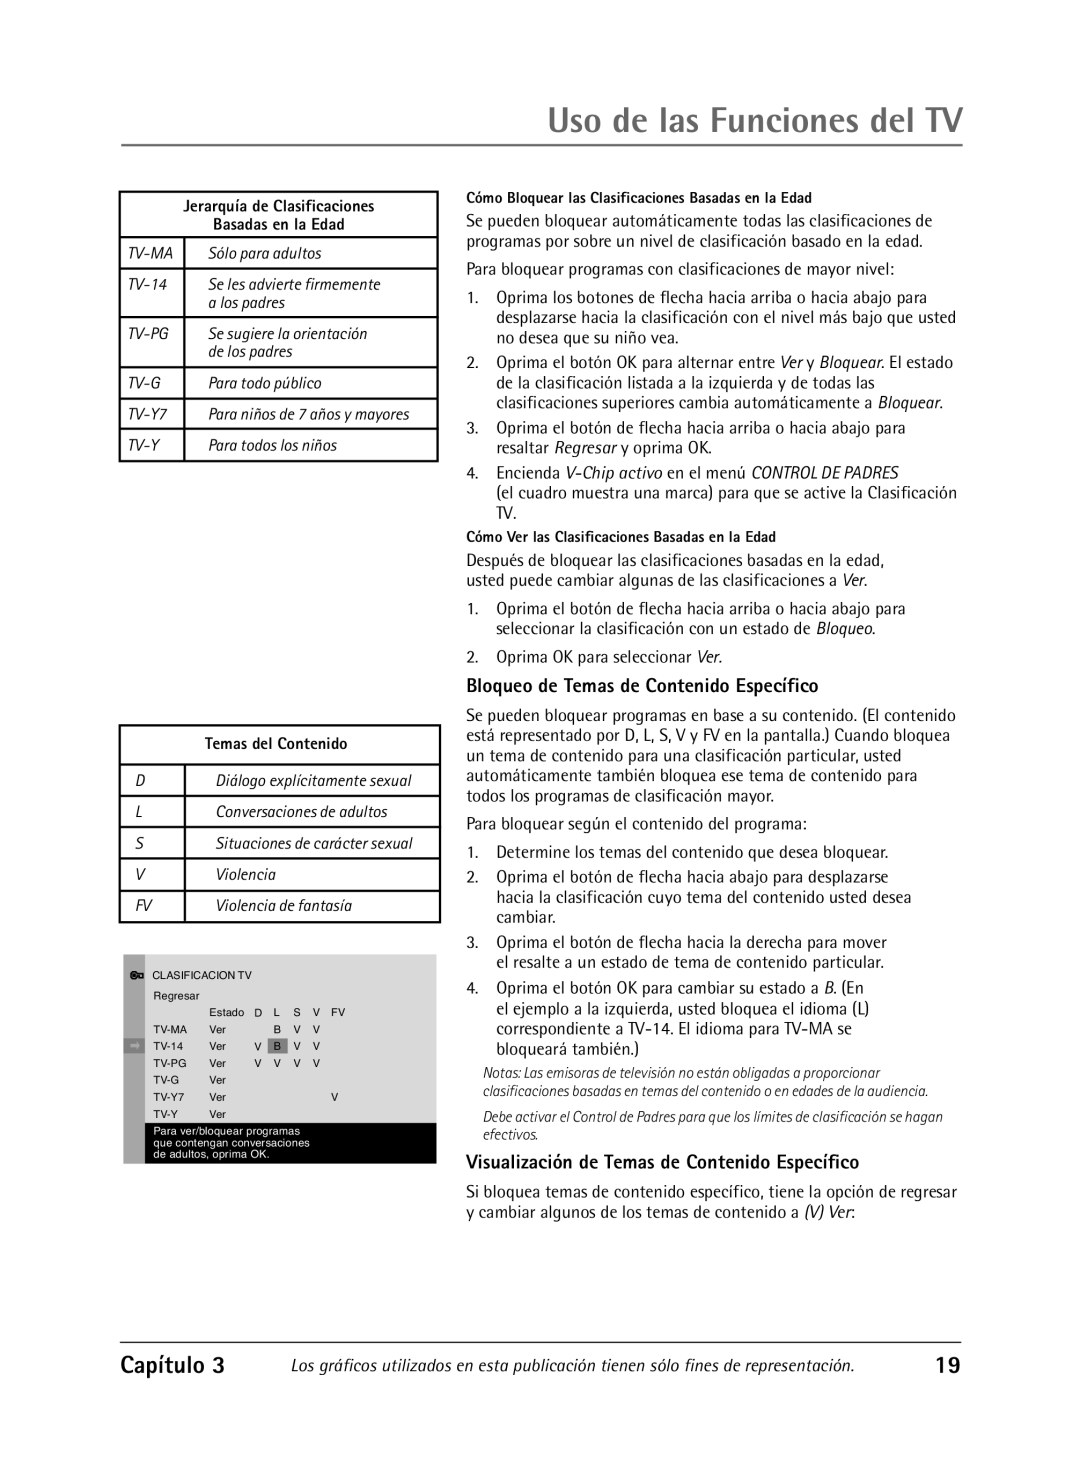 RCA Televison manual Bloqueo de Temas de Contenido Específico, Visualización de Temas de Contenido Específico, Capítulo 